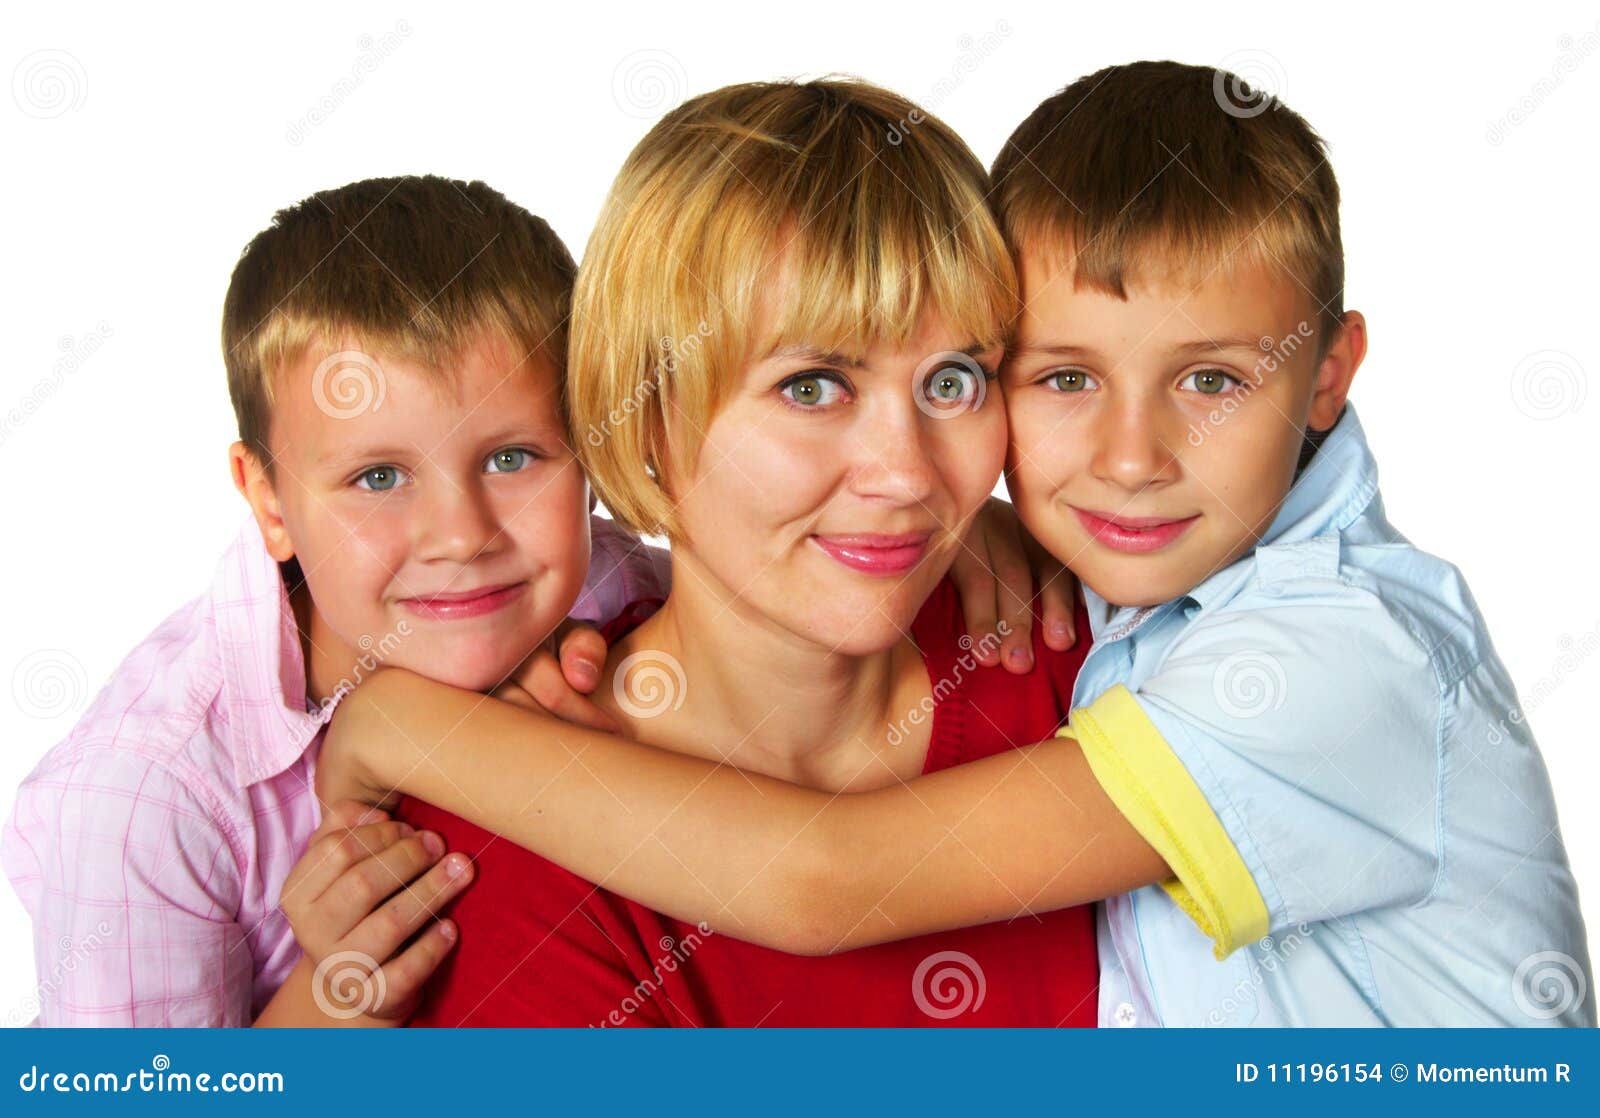 Madre con sus hijos foto de archivo. Imagen de niño, inocente - 11196154